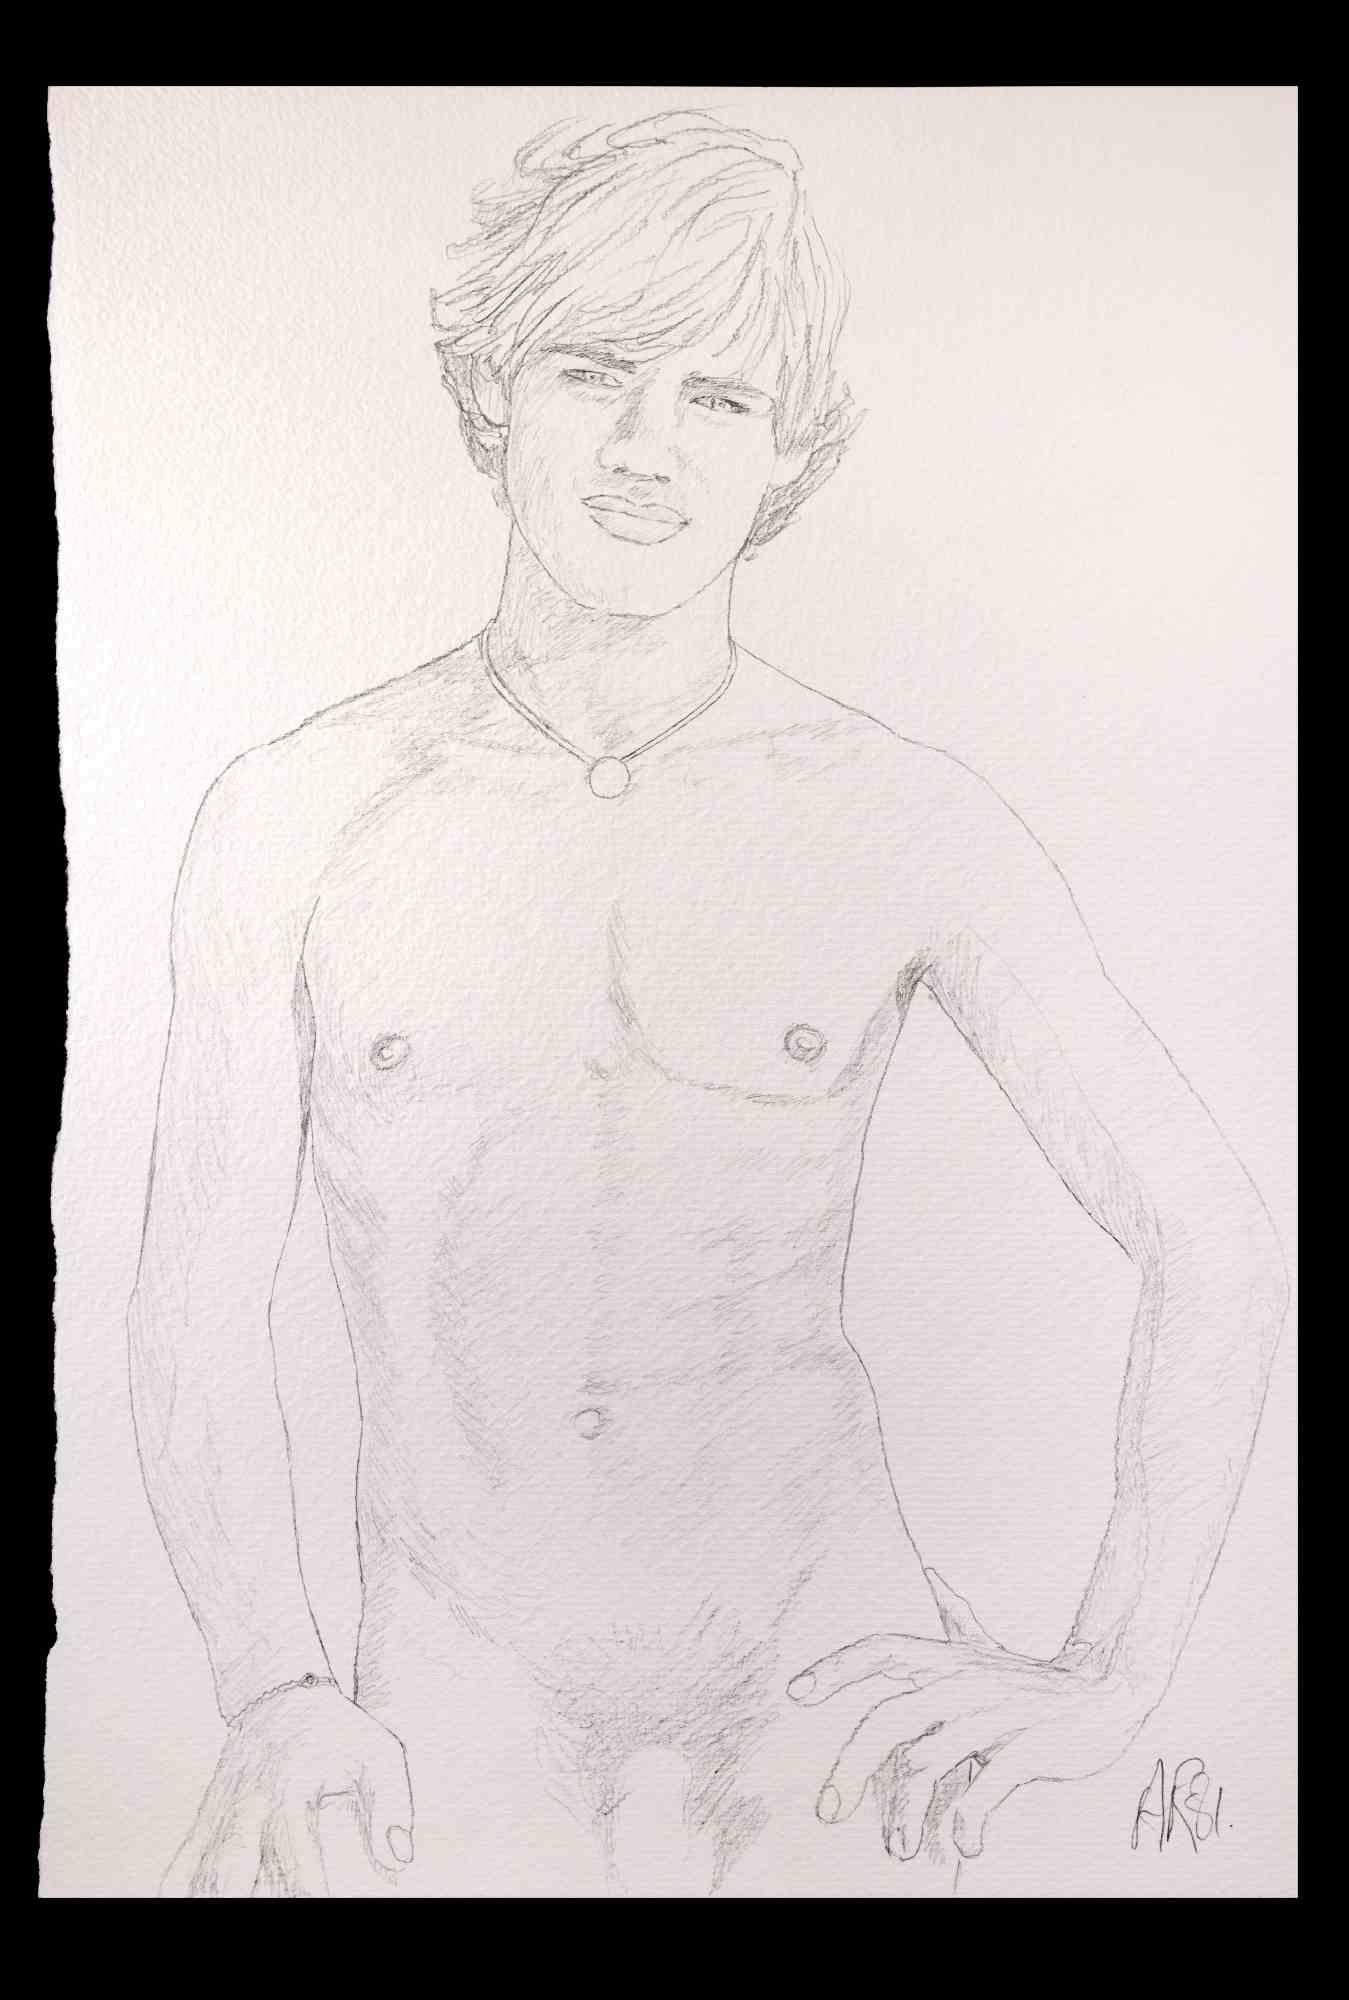 Portrait d'un garçon  est un dessin original au crayon réalisé par Anthony Roaland en 1981. Signé et daté à la main par l'artiste dans la marge inférieure droite. 

L'œuvre d'art représente un beau et frais portrait d'homme nu.

Bonnes conditions.